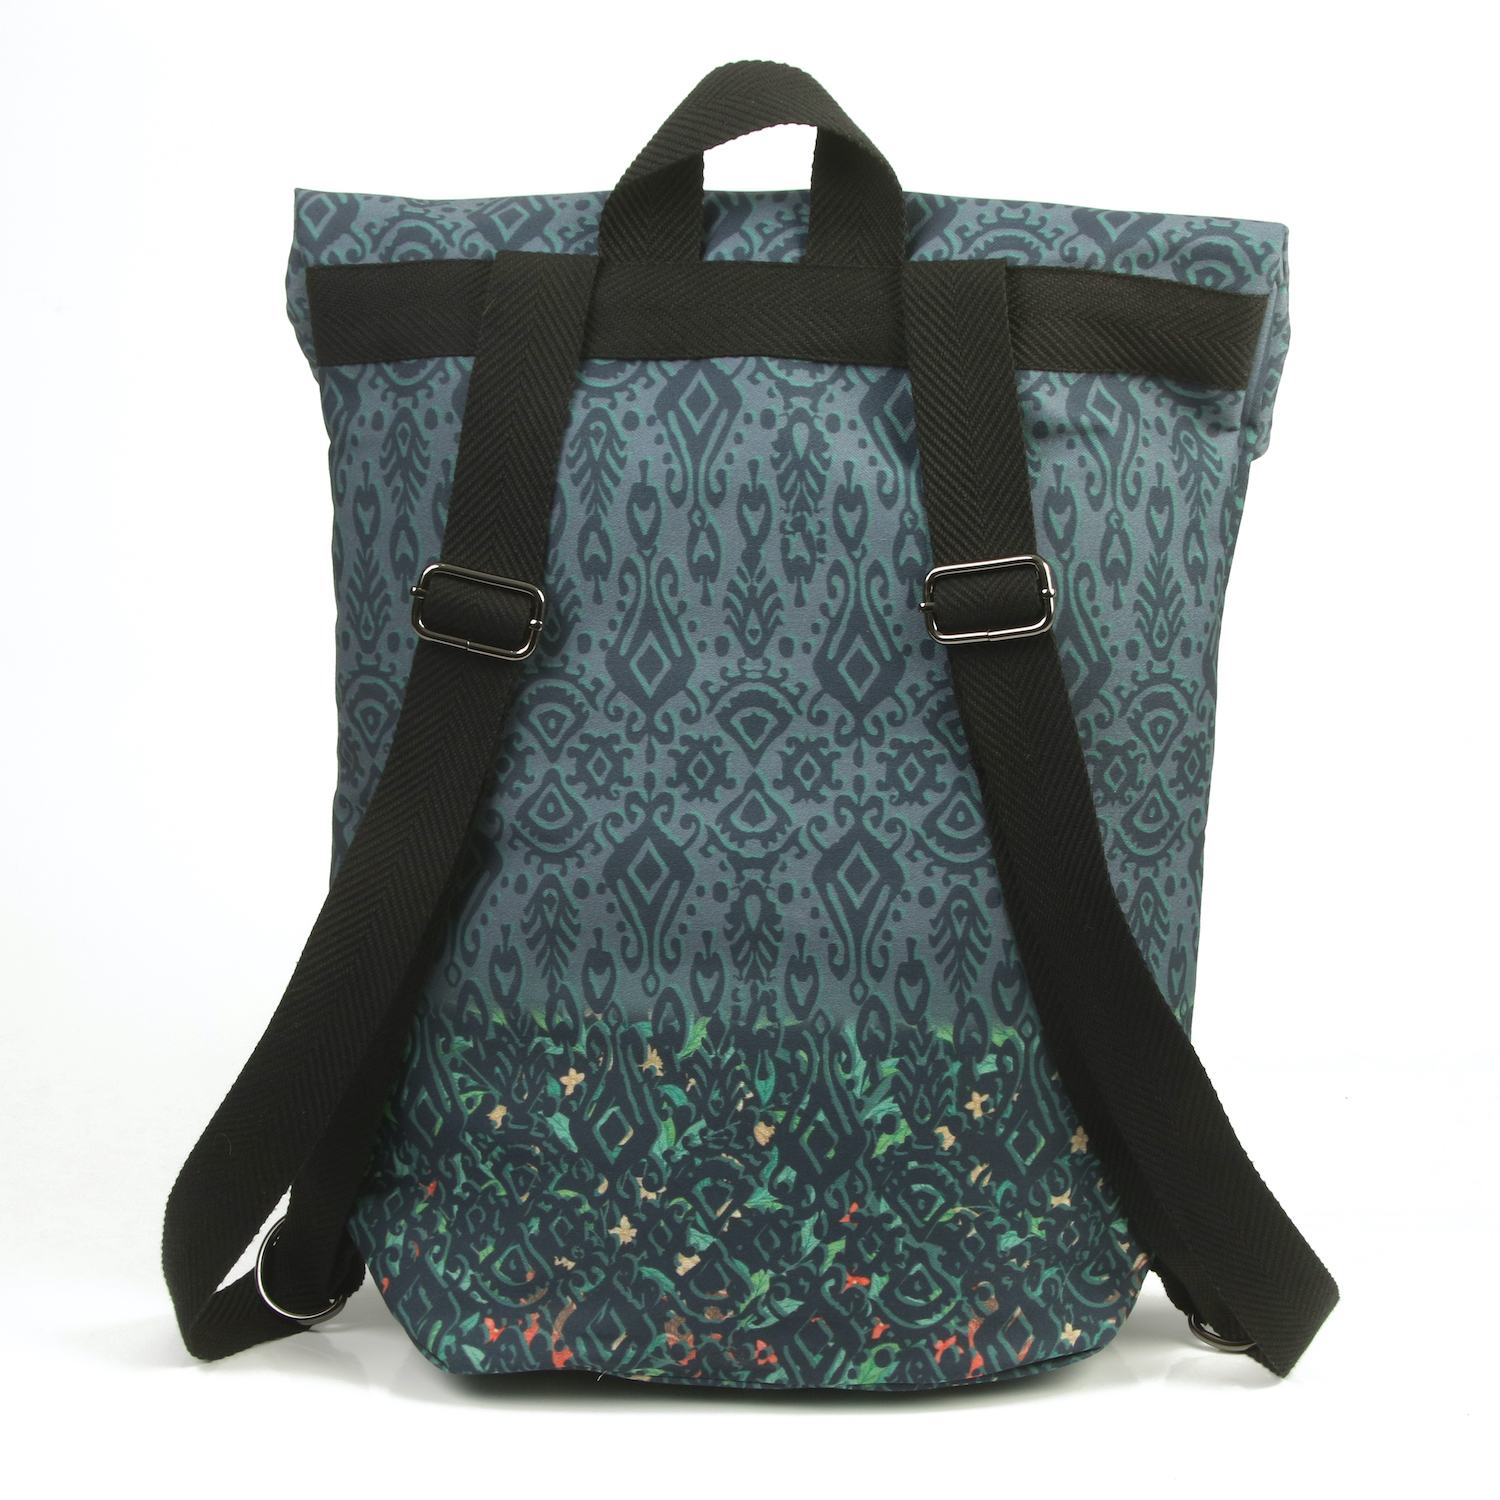 LazyDayz-Designs-Backpack-γυναικείος-σάκος-πλάτης-χειροποίητος bb0803c